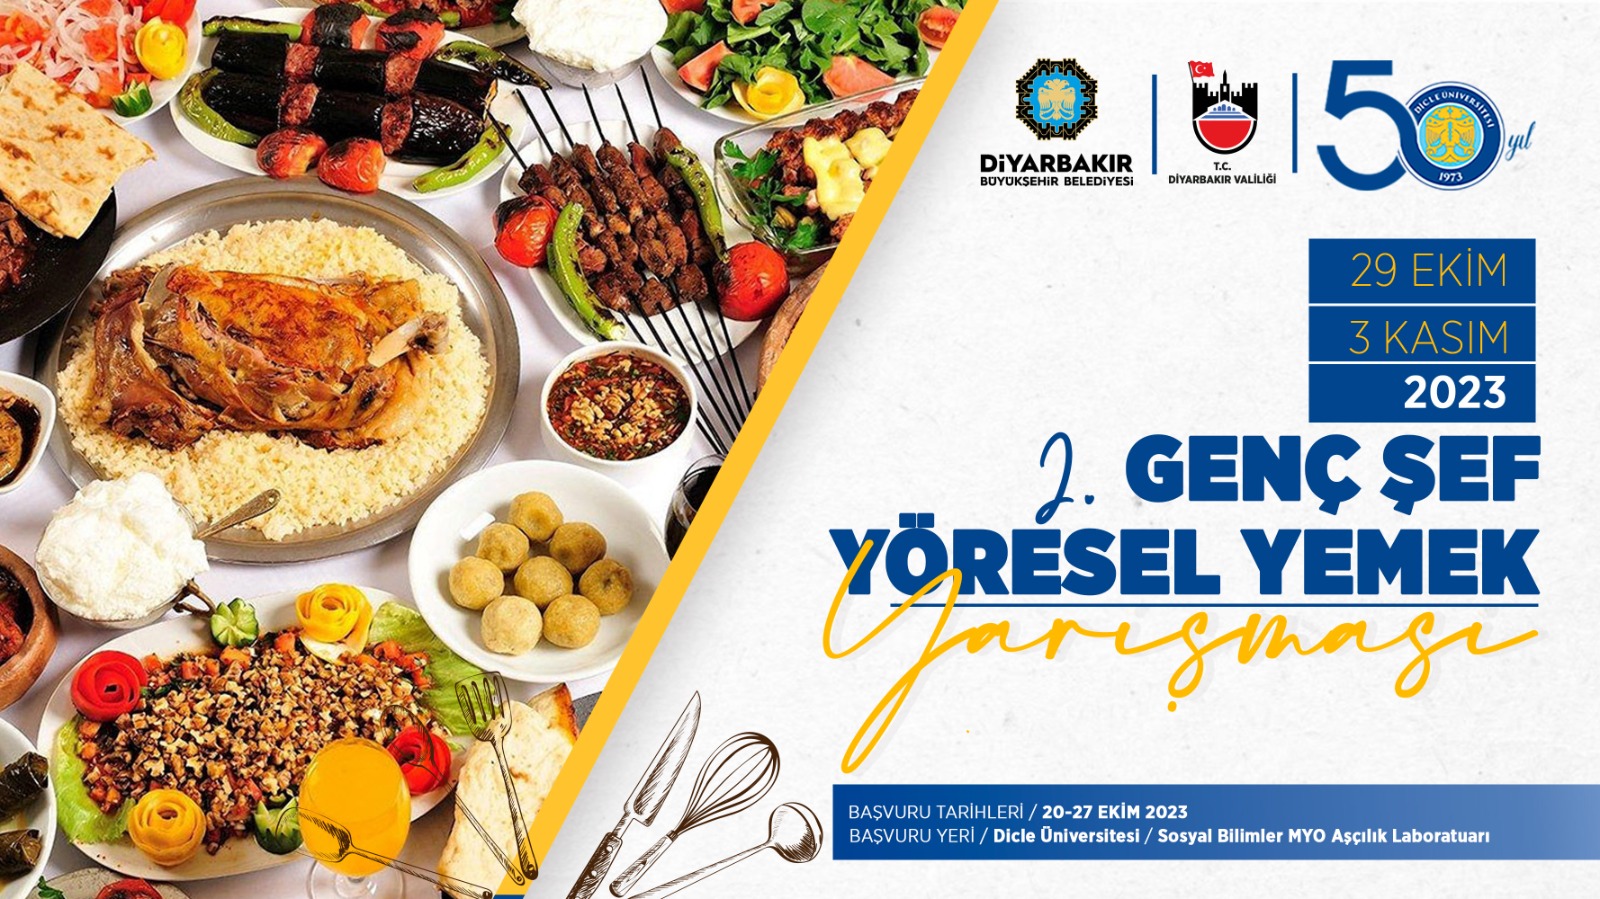 Diyarbakır’da “2. Genç Şef Yöresel Yemek Yarışması” düzenlenecek